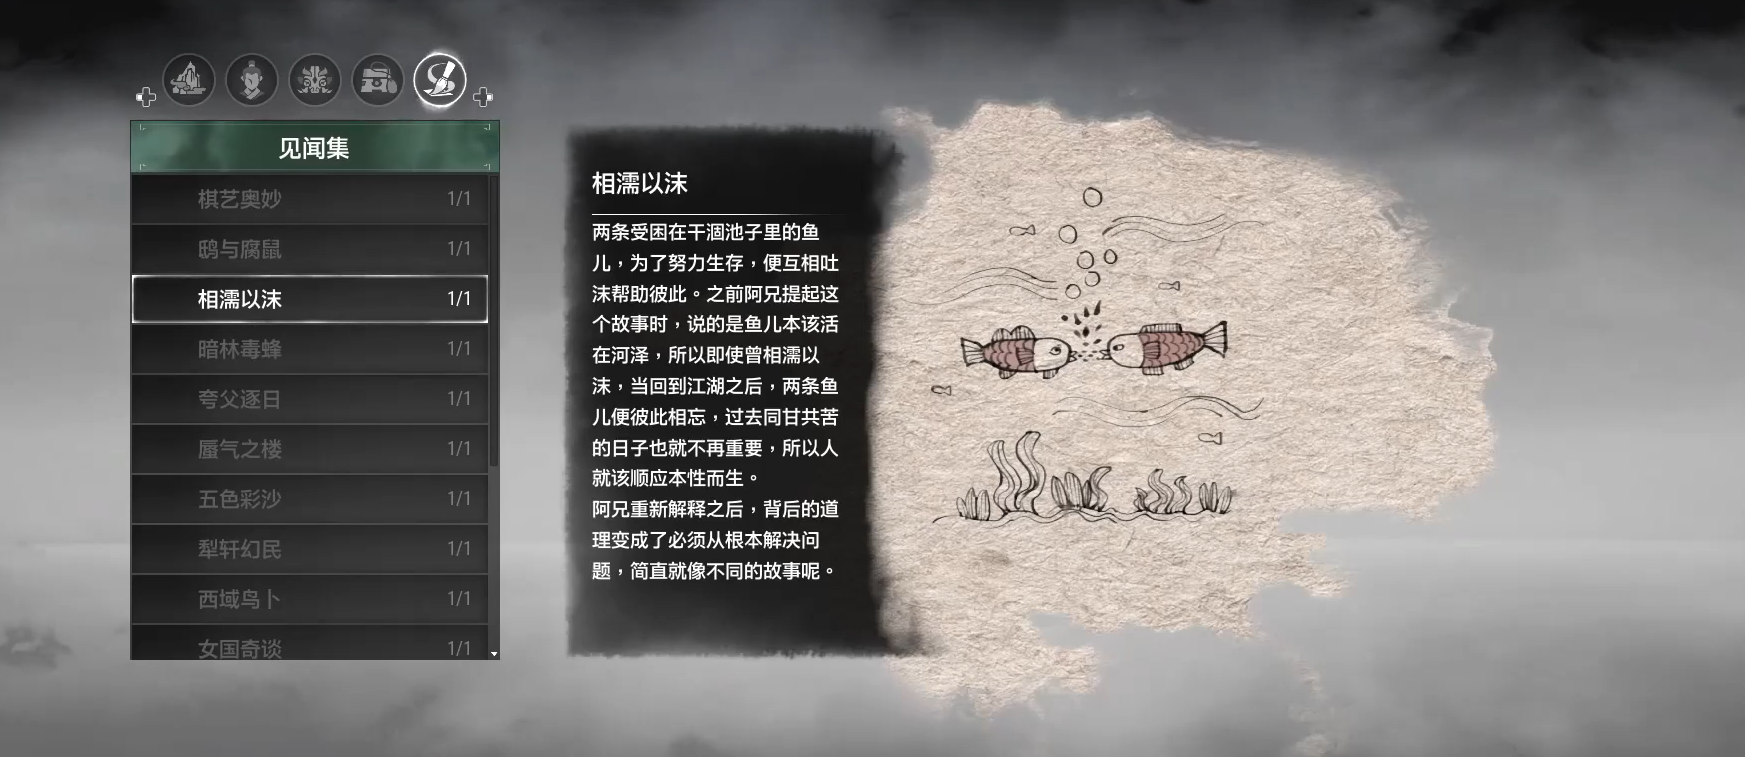 《轩辕剑柒》的事典是由绘画大师太史湘编写的